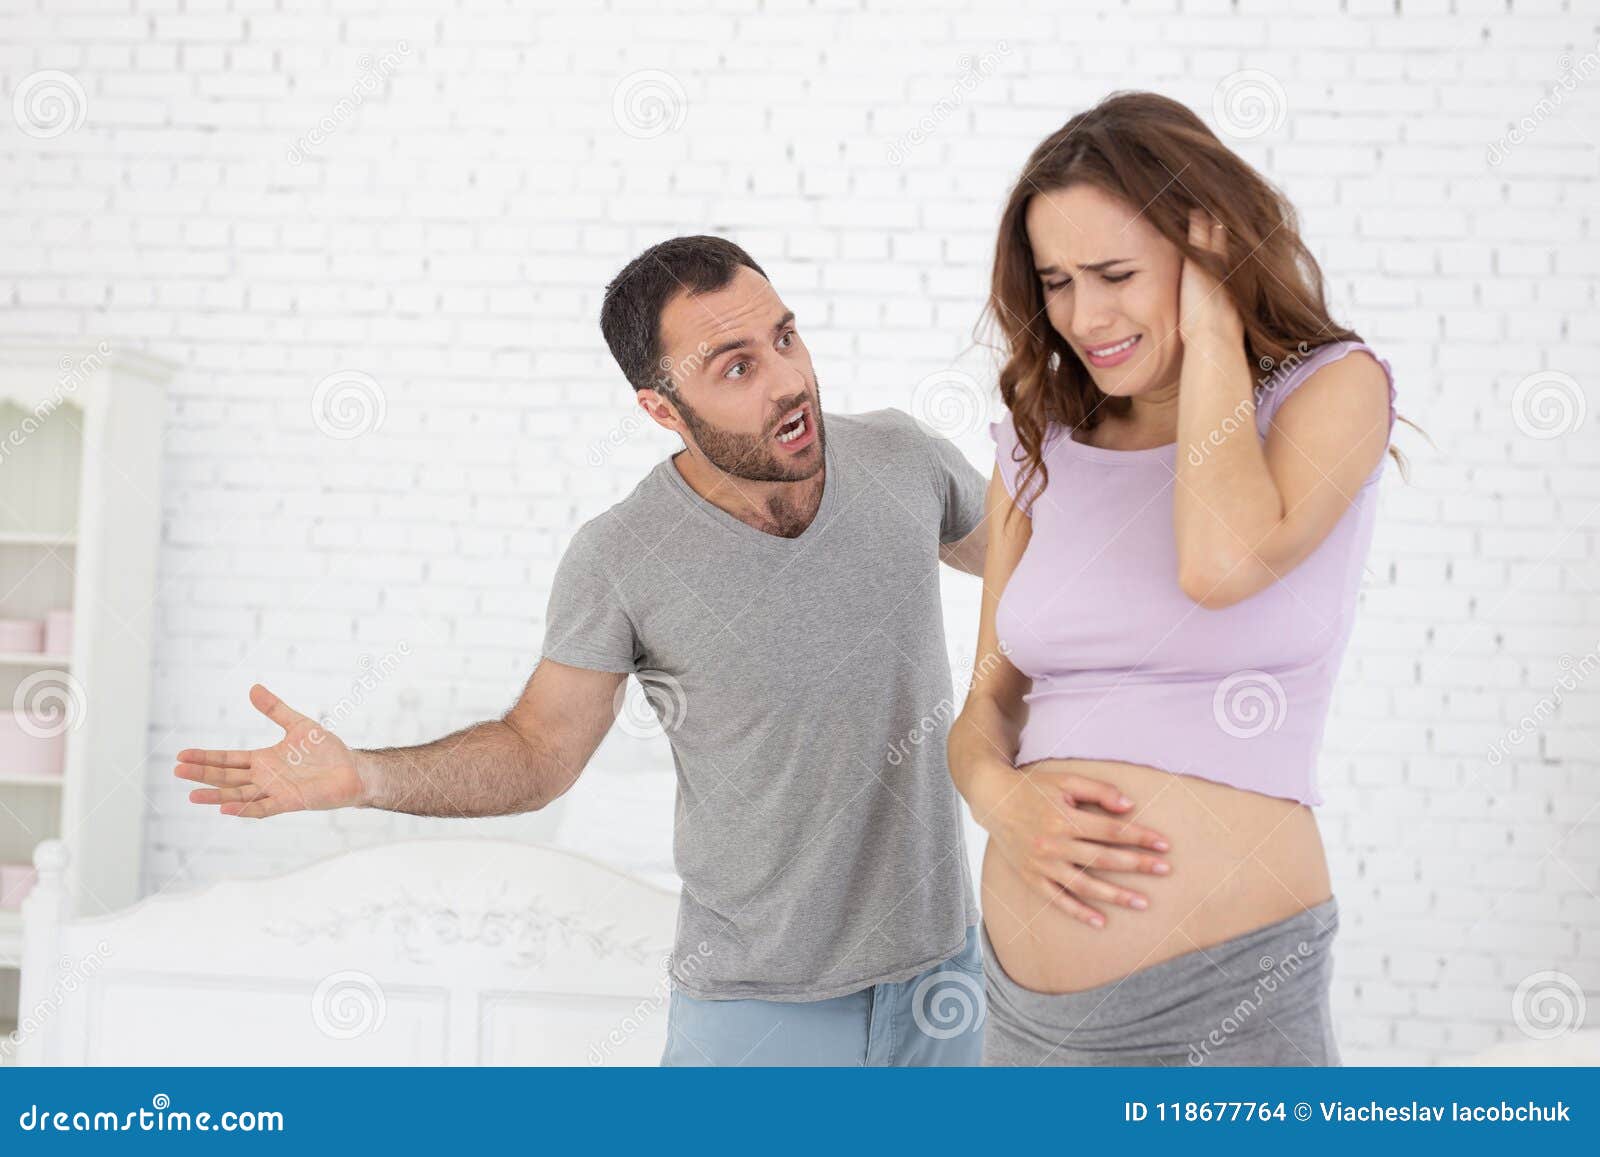 Изменяла мужу во время беременности